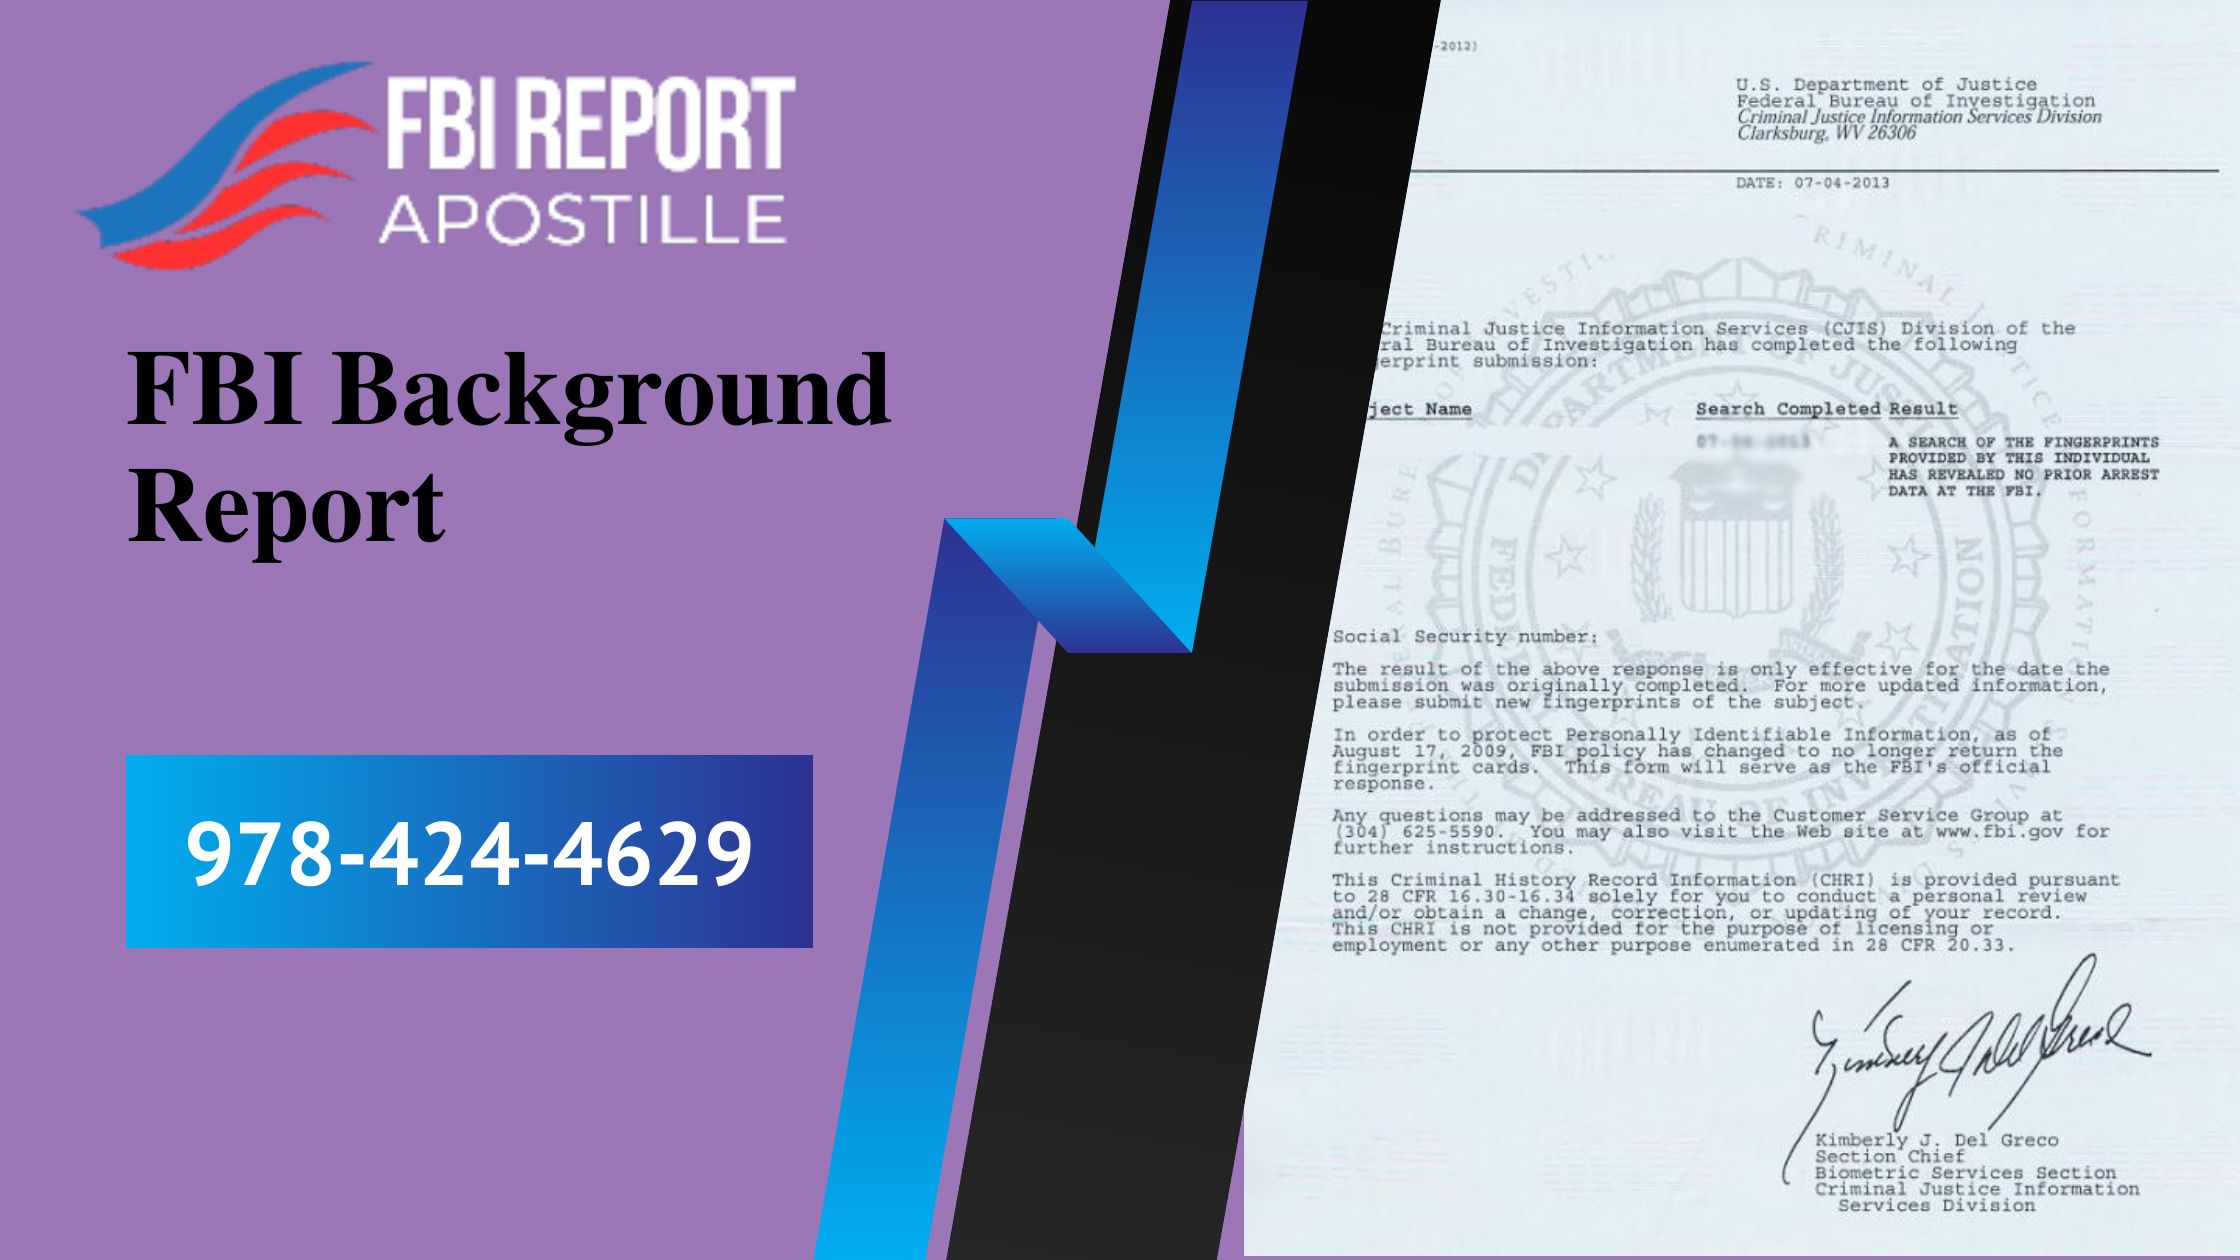 FBI background Report - Apostille FBI Report - Apostille FBI Report